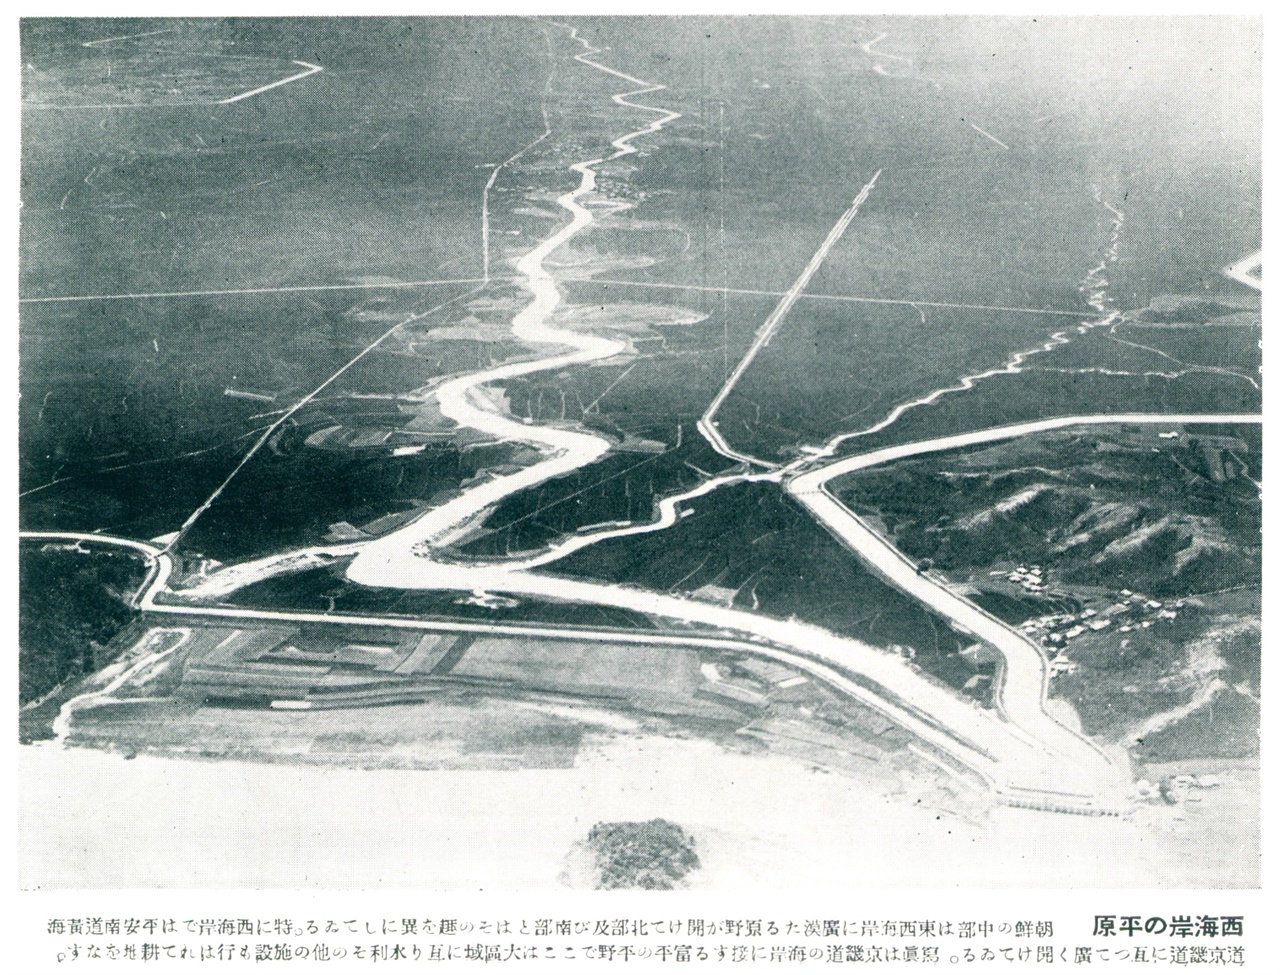 산미증식계획에 따라 일본인 대지주들이 설립한 부평수리조합이 1920년대 중반 관개사업을 시행함. 이때 개설된 3개 수로와 중앙도로 모습이 선명함.